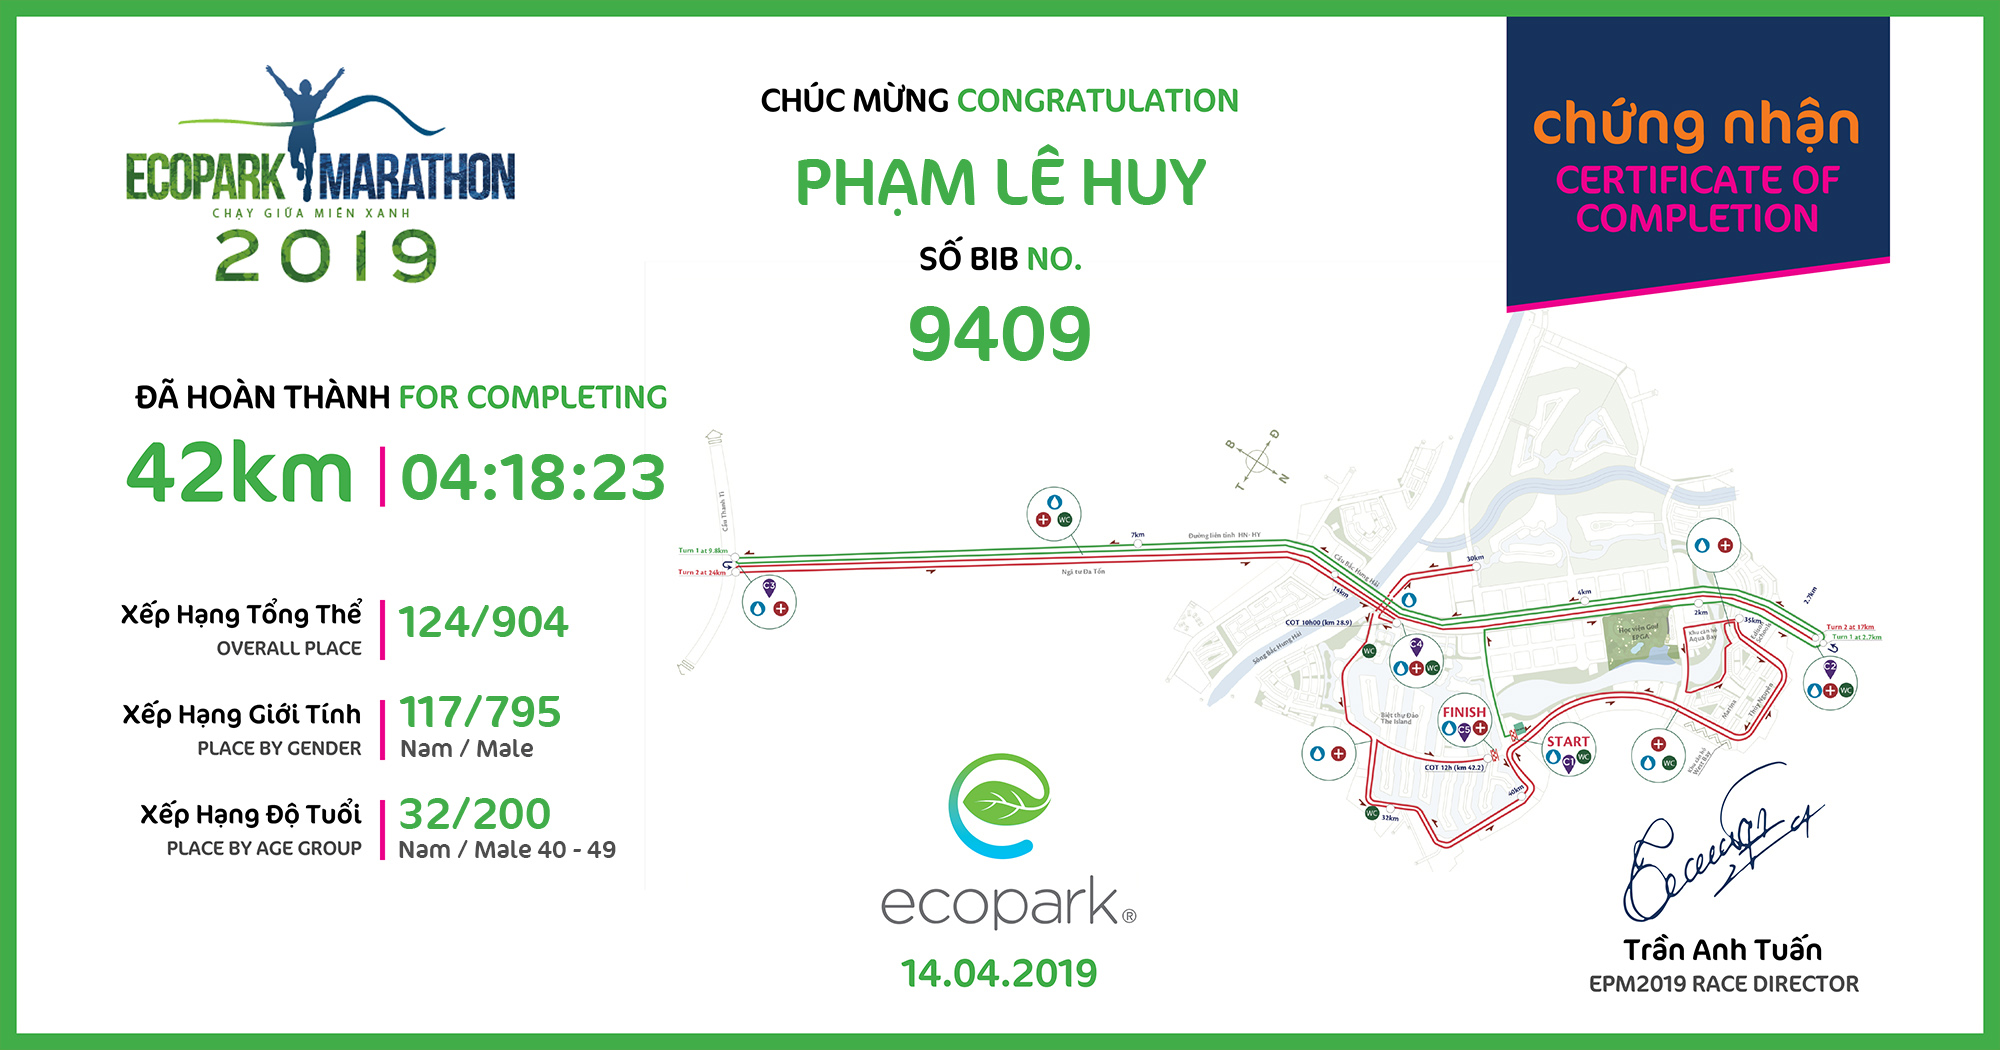 9409 - Phạm Lê Huy